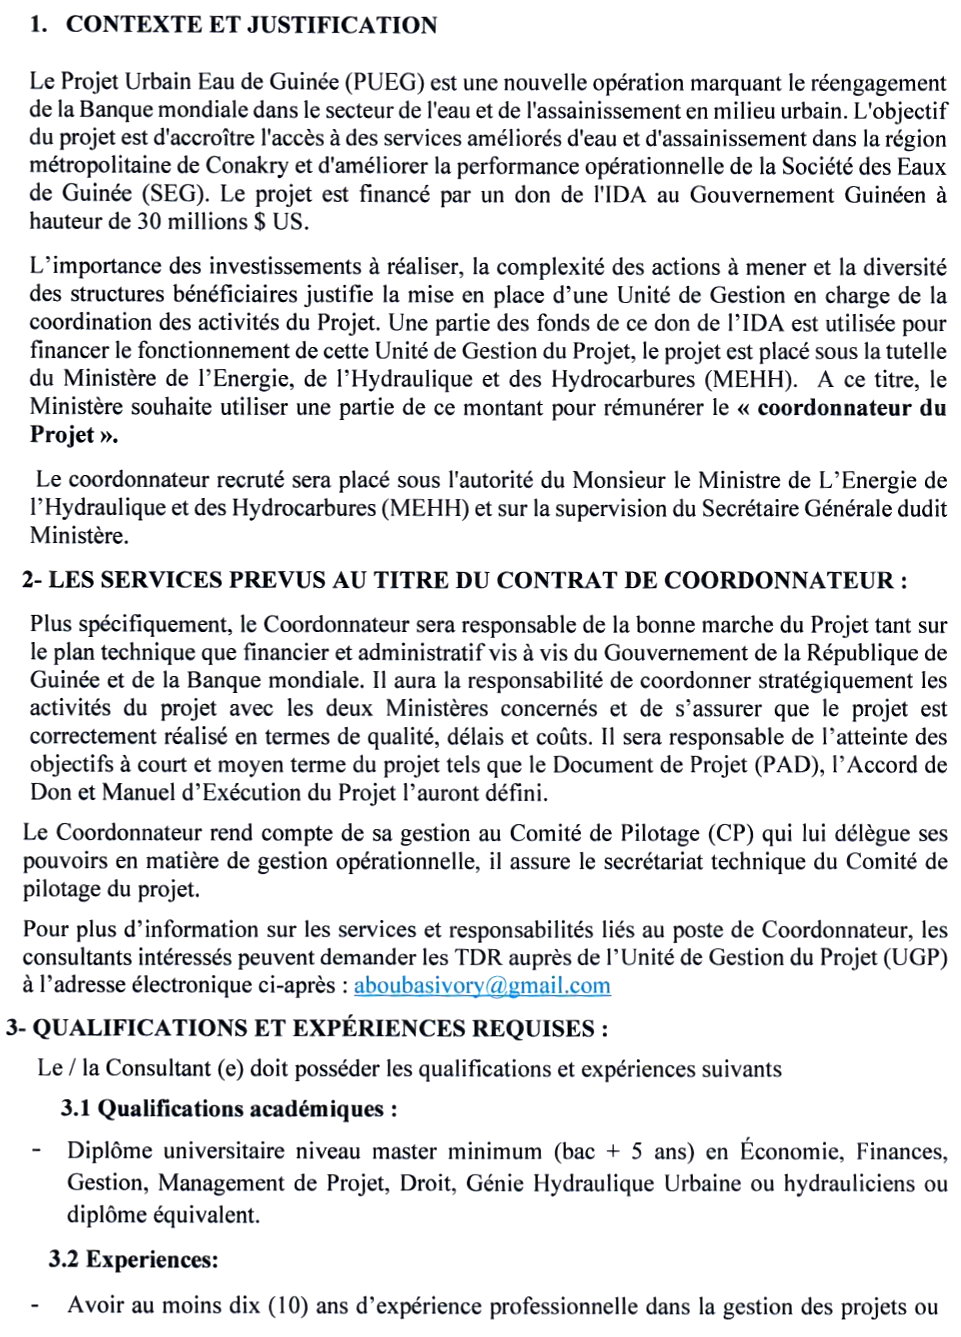 AVIS A MANIFESTATION D’INTERET POUR LE RECRUTEMENT D’UN COORDONNATEUR POUR LEPROJET URBAIN EAU DE GUINEE (PUEG) | Page 2